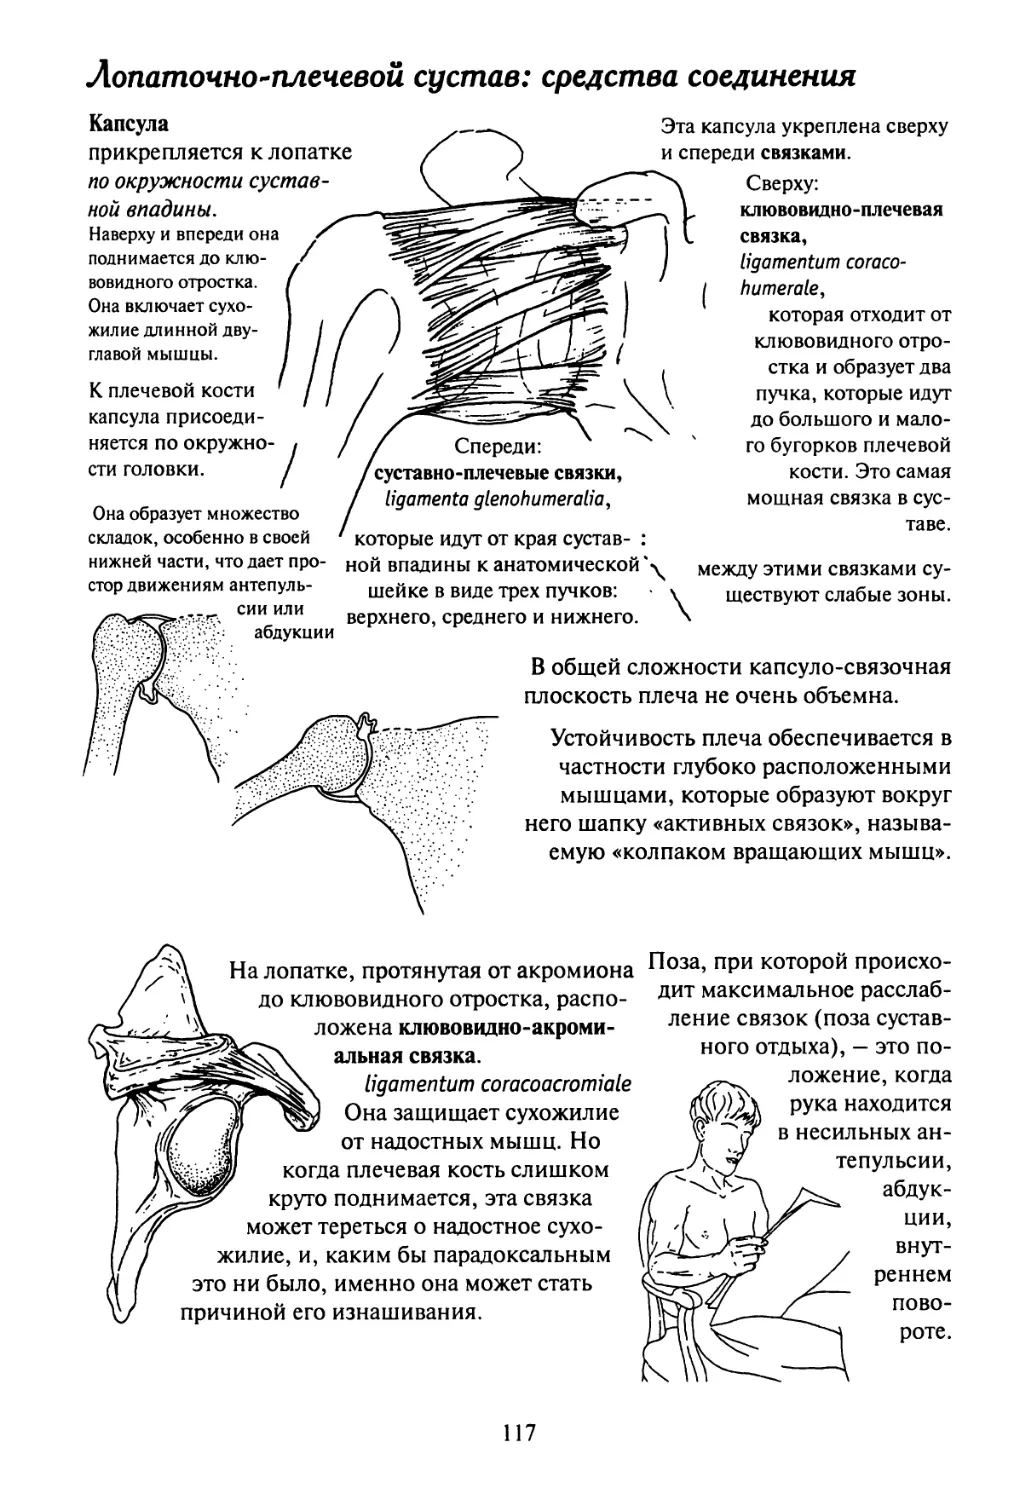 Плечевой сустав классификация